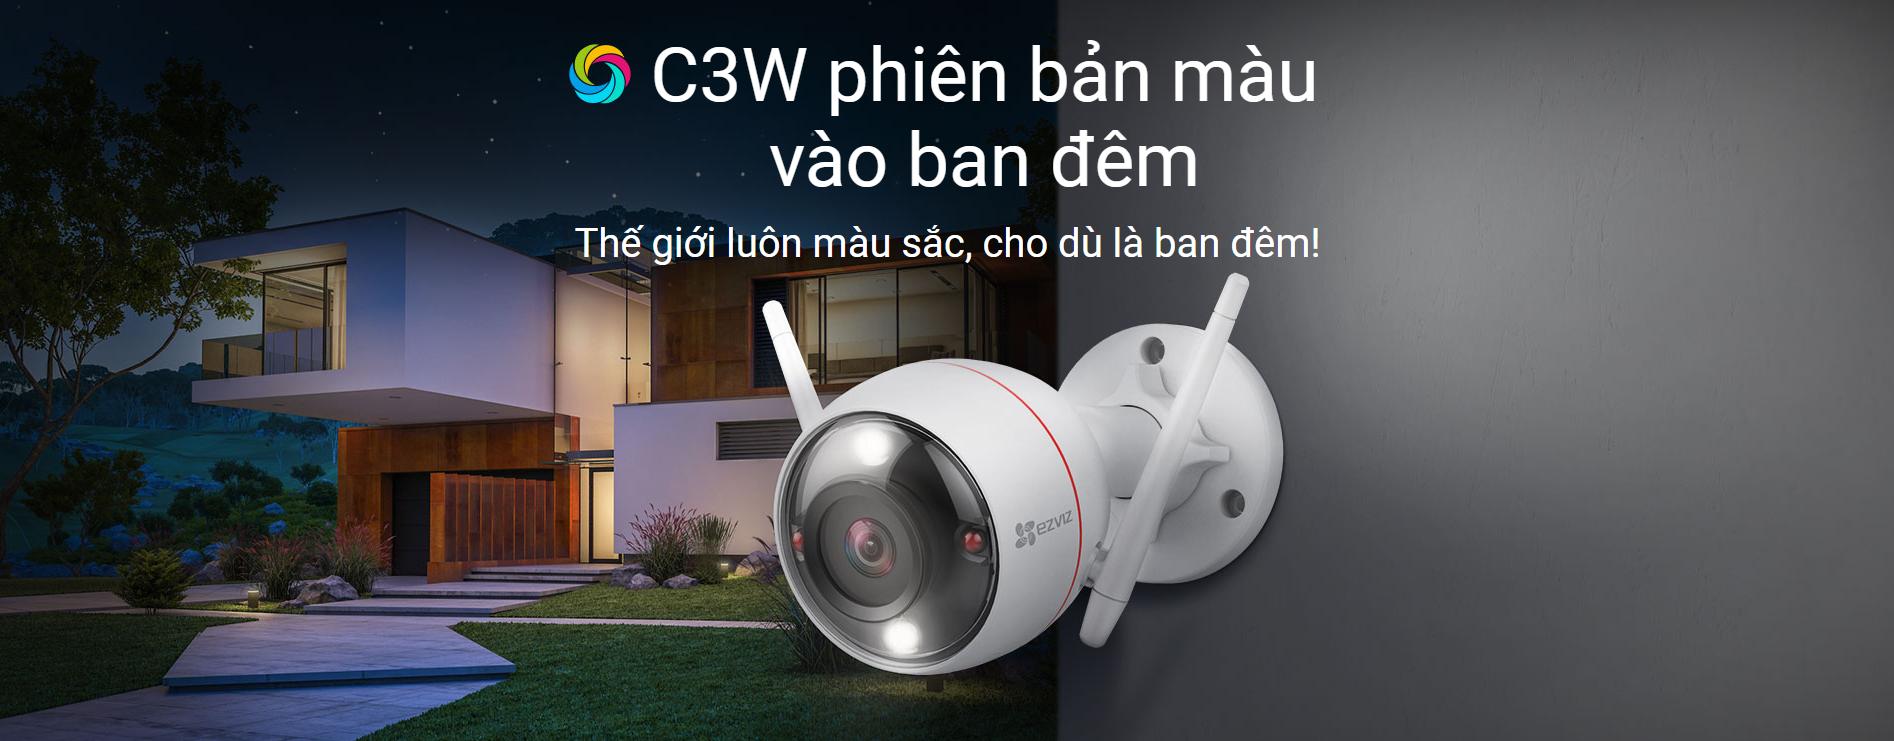 Camera Ezviz C3W 2MP phiên bản ban đêm có màu có tích hợp bảo vệ kép